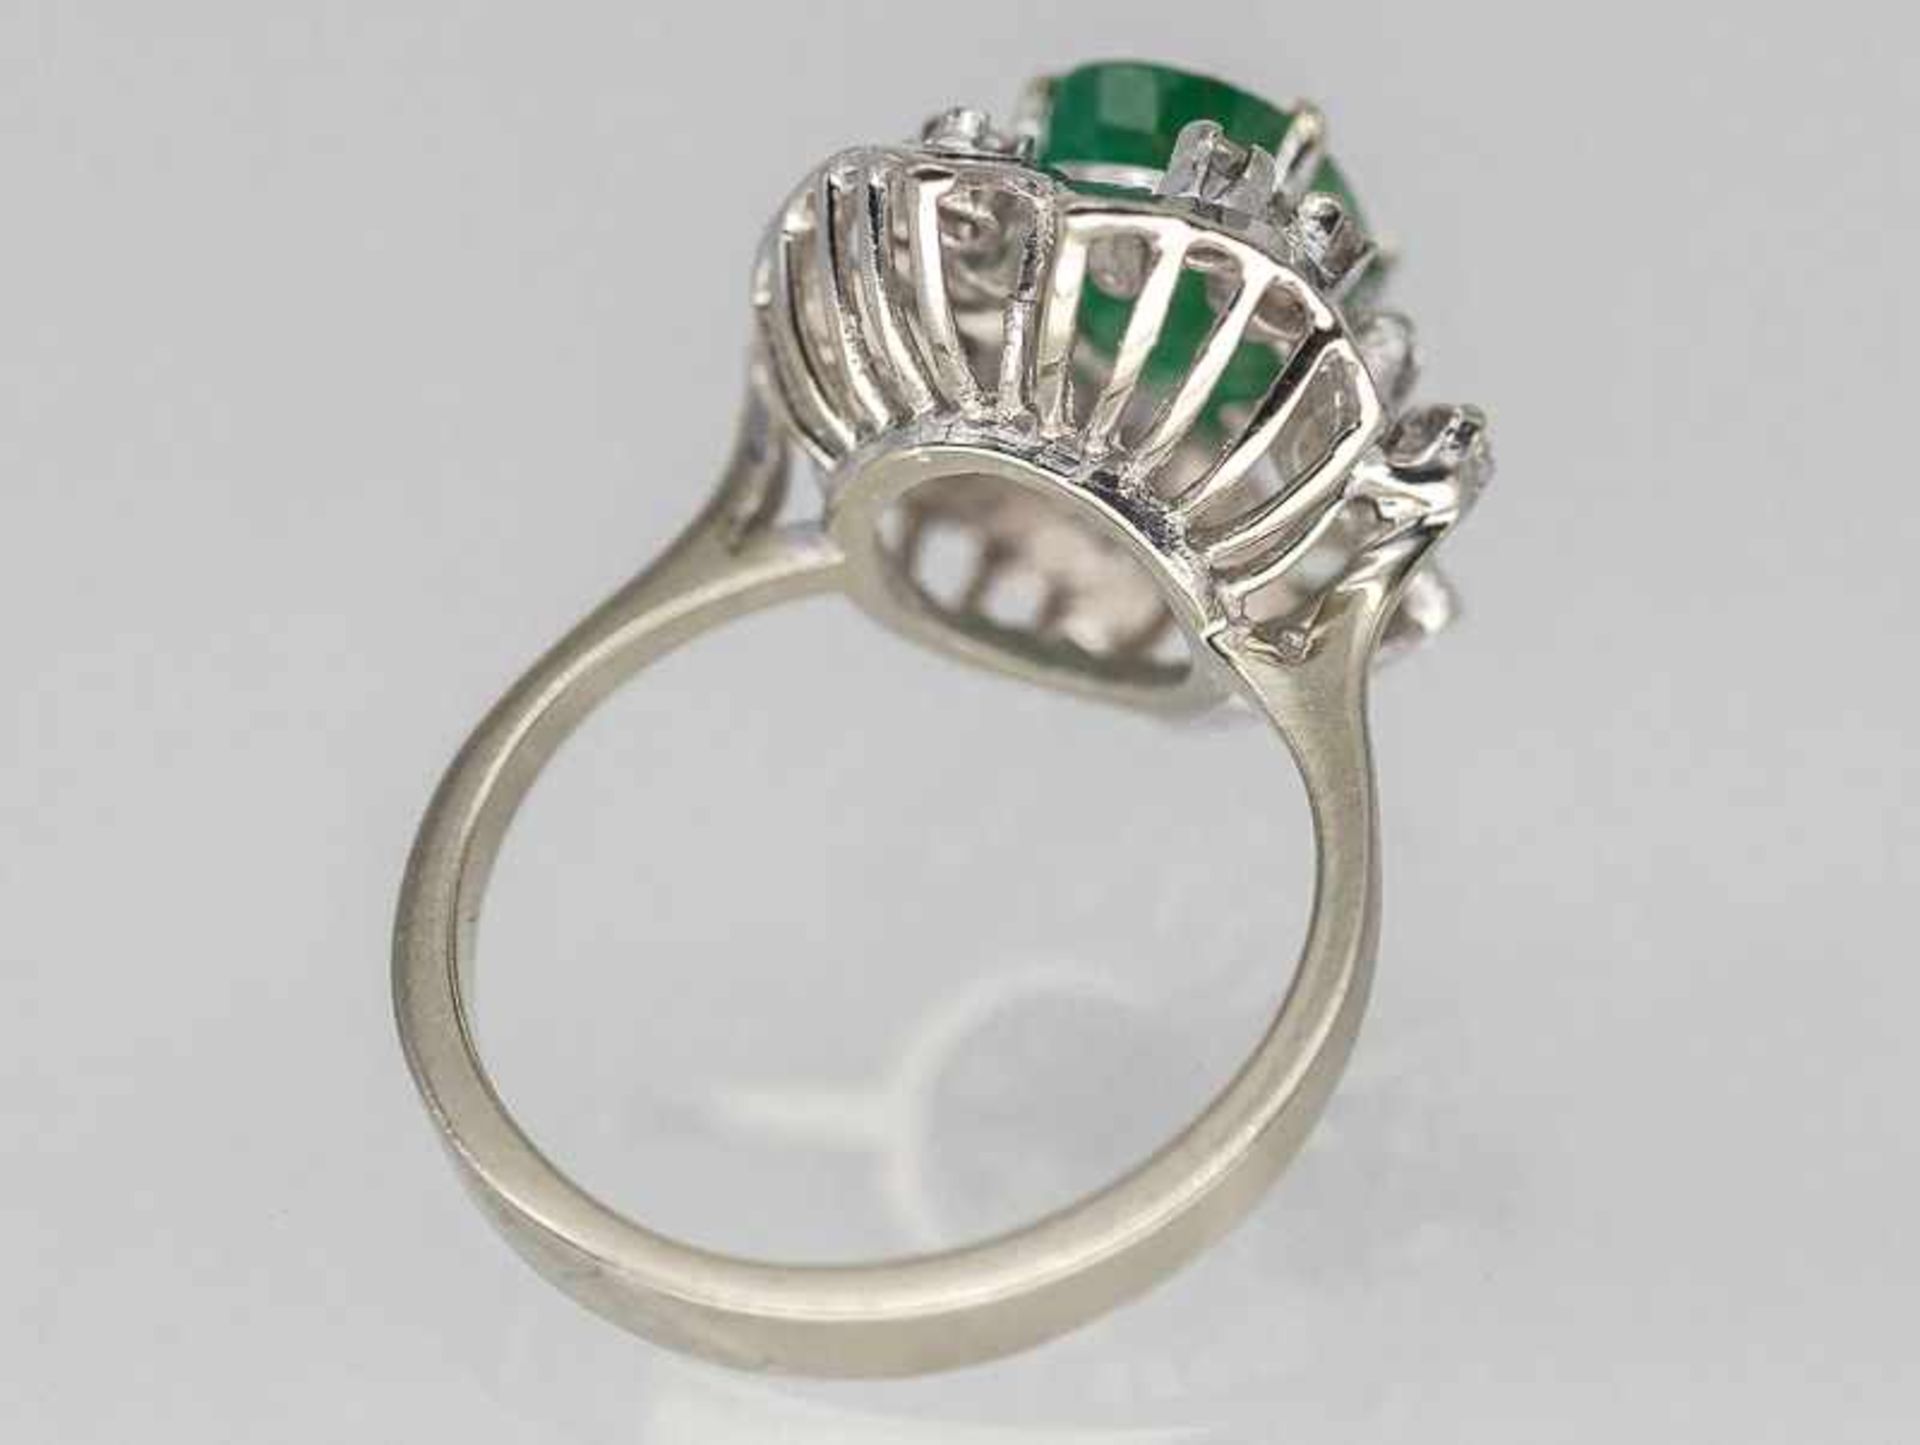 Ring mit Smaragd und 12 Brillanten, zusammen ca. 0,10 ct, 70- er Jahre. - Image 2 of 2